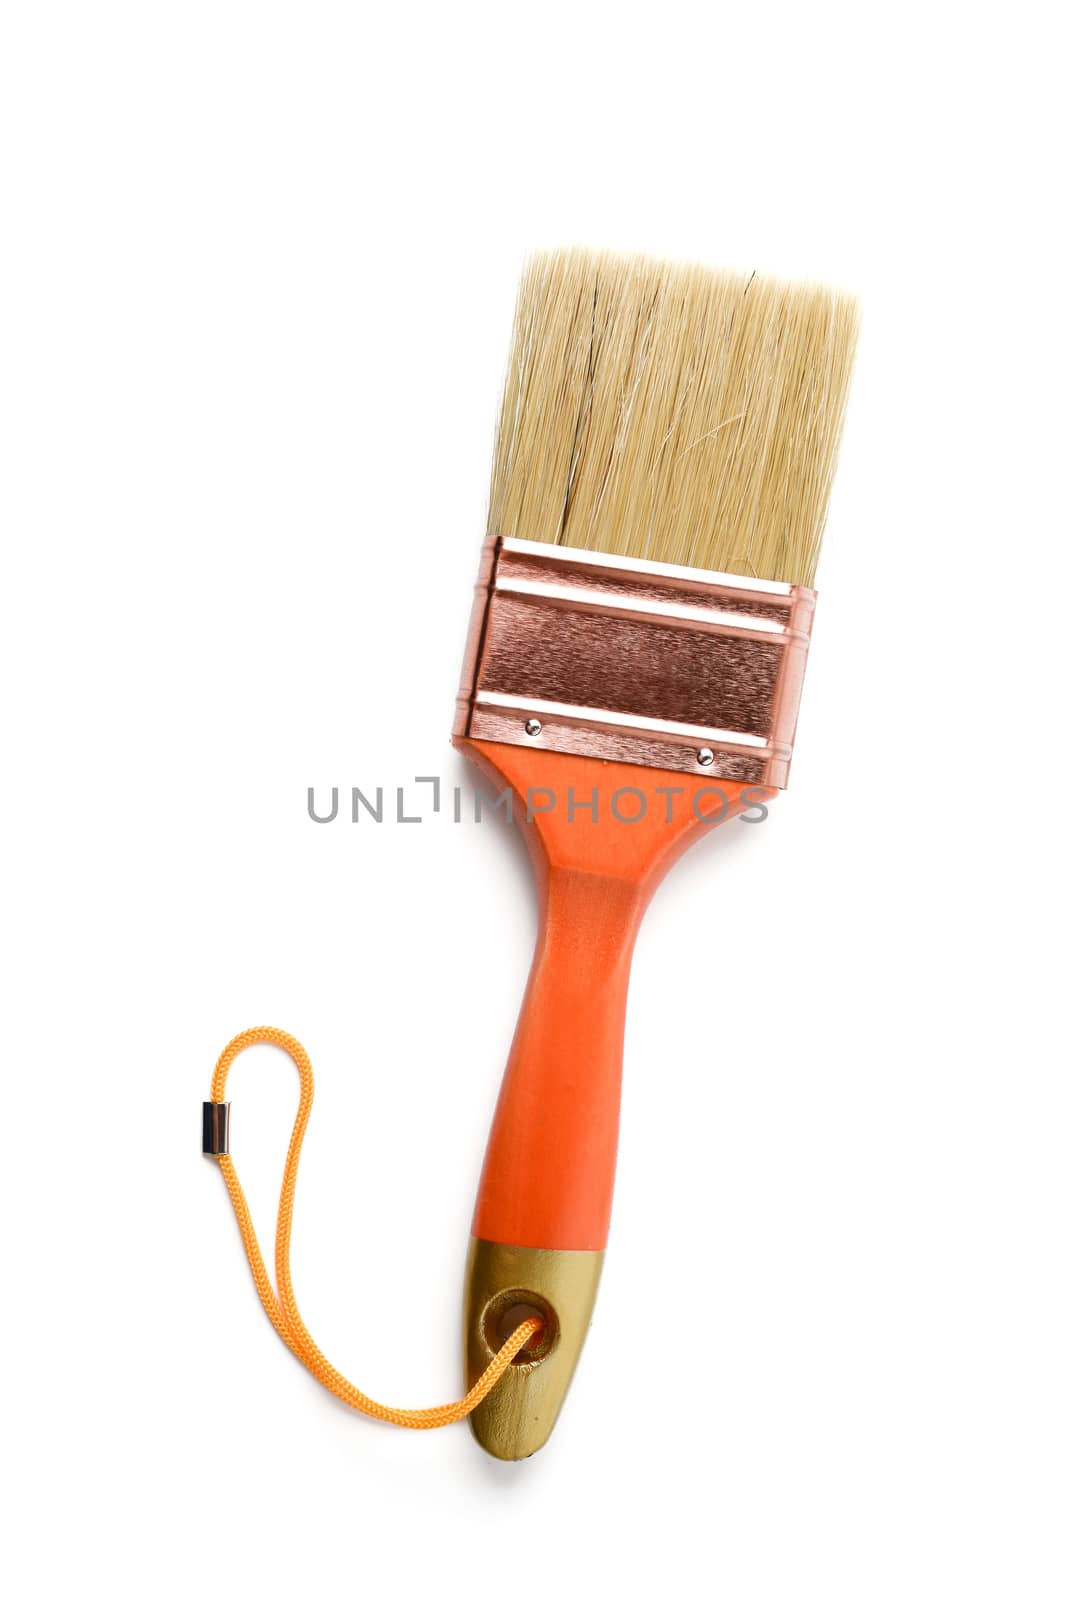 paint brush by antpkr